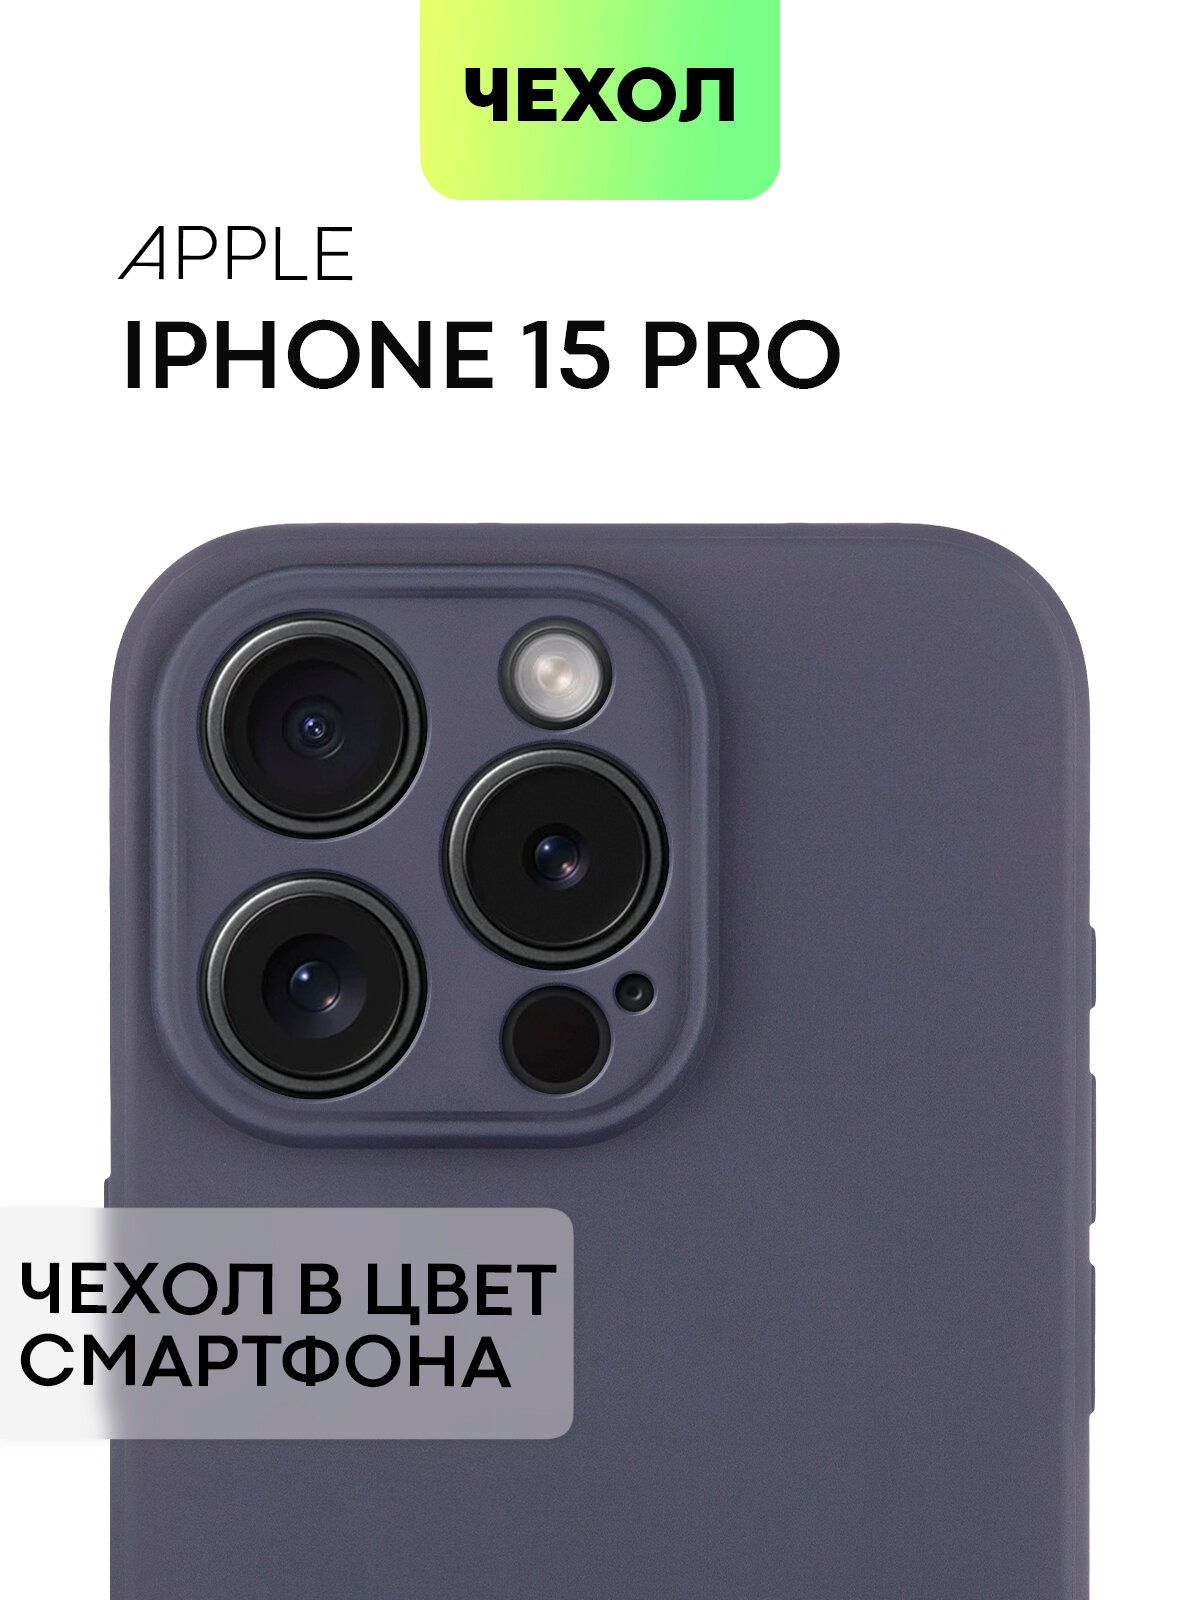 Чехол BROSCORP для Apple iPhone 15 Pro (Эпл Айфон 15 Про), тонкий, силиконовый чехол, с матовым покрытием и защитой камер, темно-синий